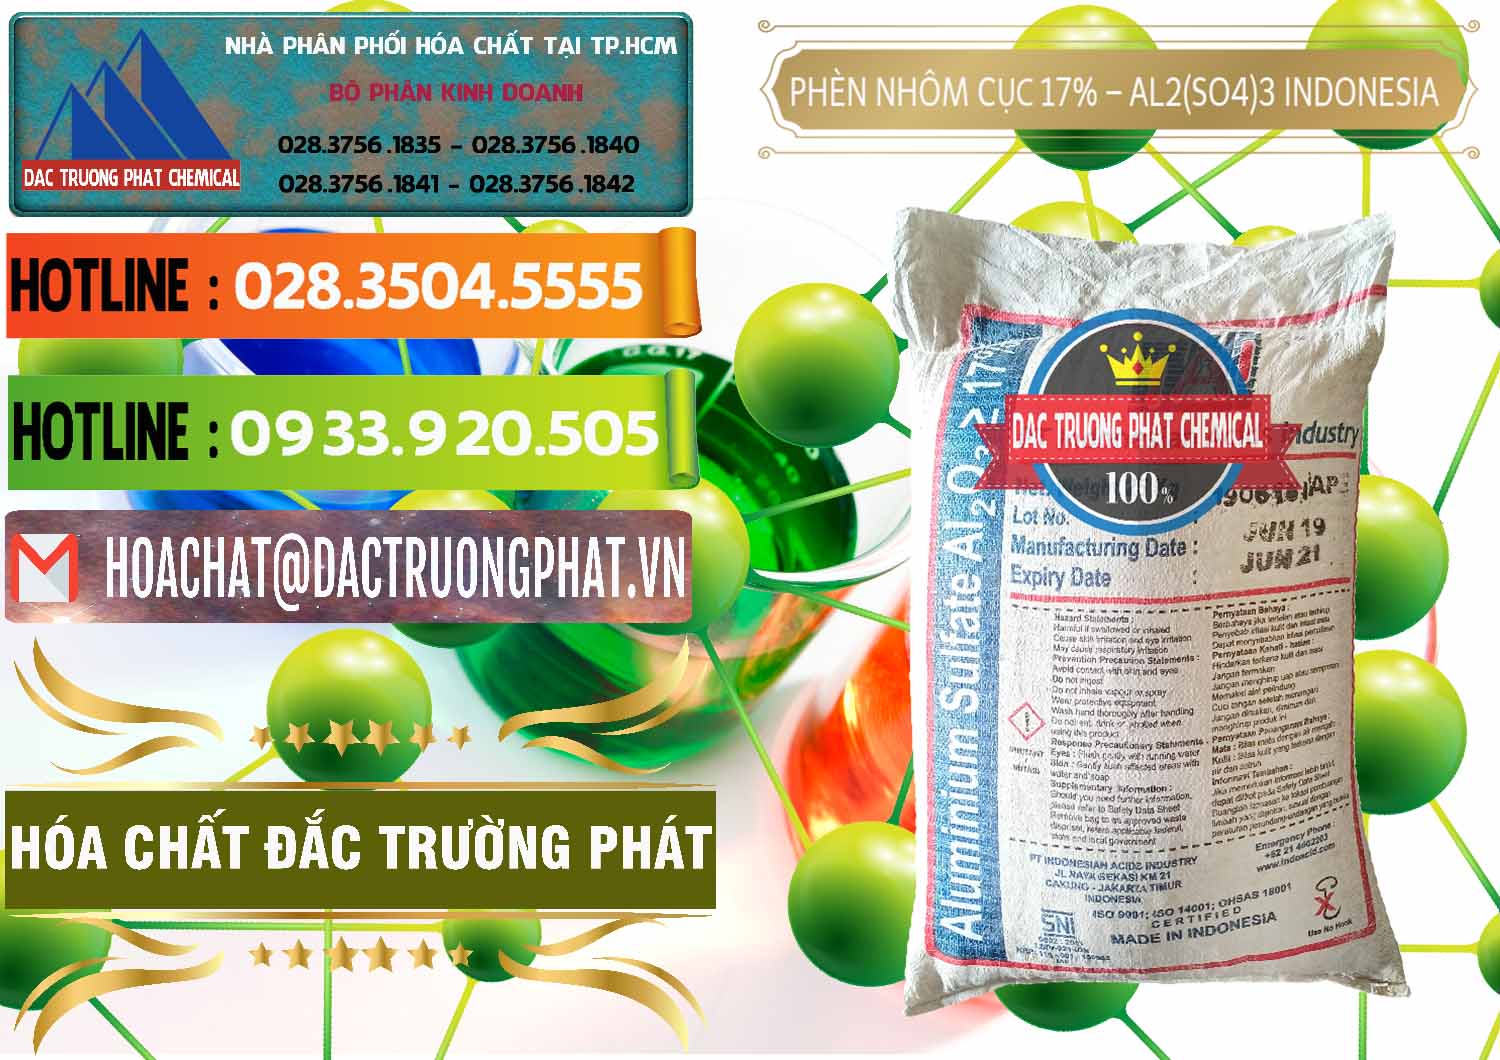 Cty phân phối và bán Phèn Nhôm Cục - Al2(SO4)3 17% bao 25kg Indonesia - 0115 - Công ty chuyên nhập khẩu và phân phối hóa chất tại TP.HCM - cungcaphoachat.com.vn